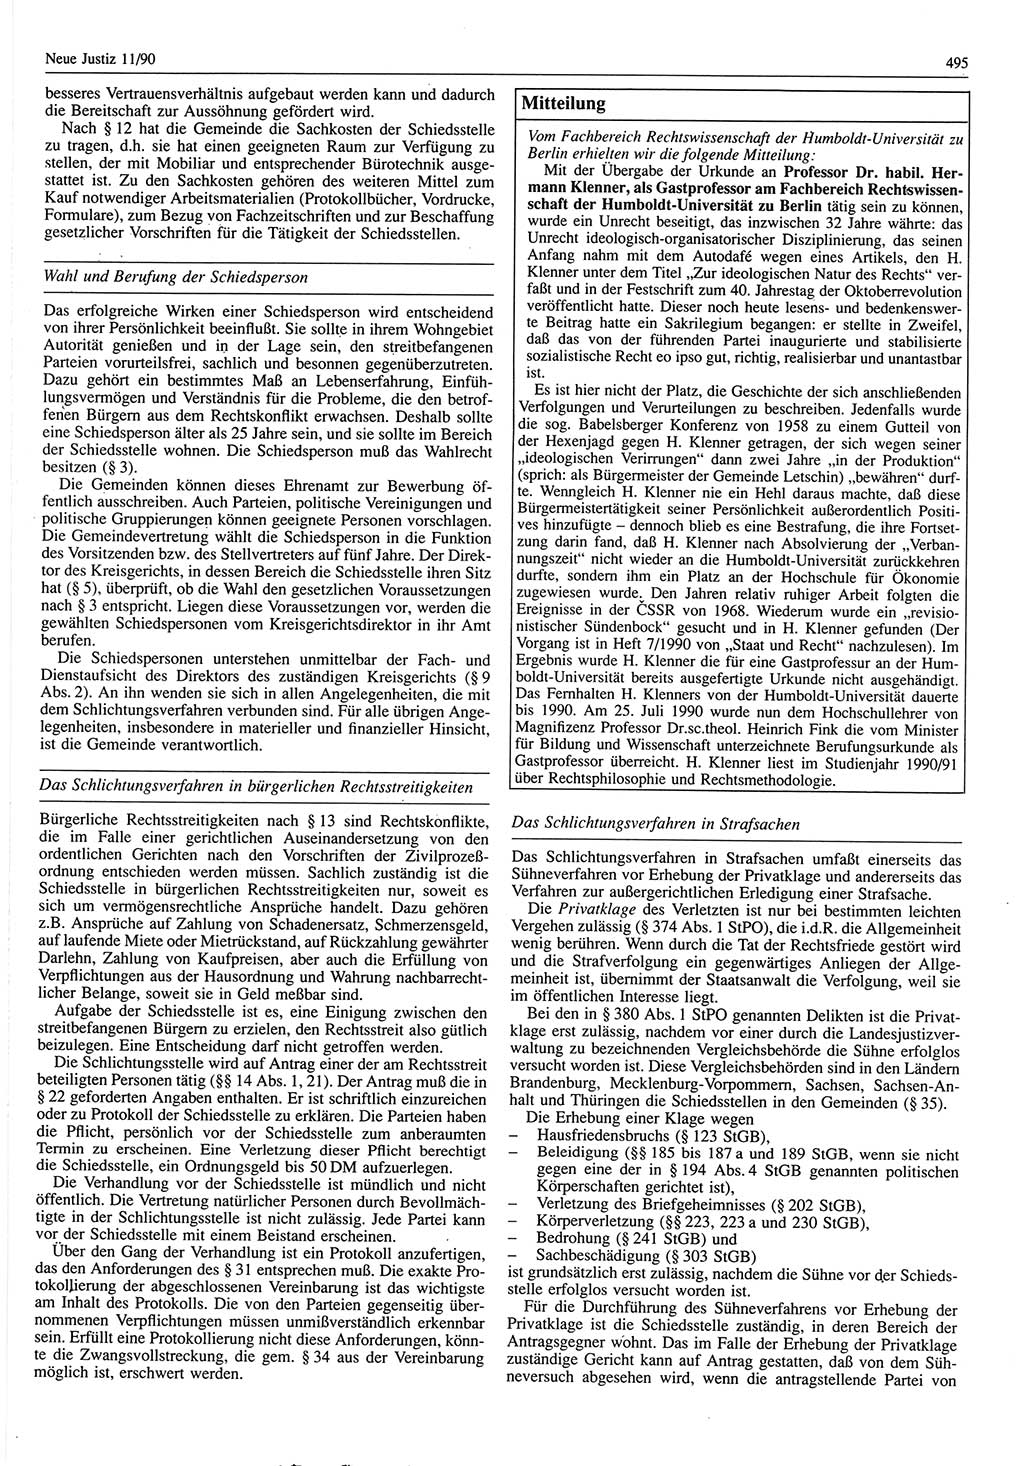 Neue Justiz (NJ), Zeitschrift für Rechtsetzung und Rechtsanwendung [Deutsche Demokratische Republik (DDR)], 44. Jahrgang 1990, Seite 495 (NJ DDR 1990, S. 495)